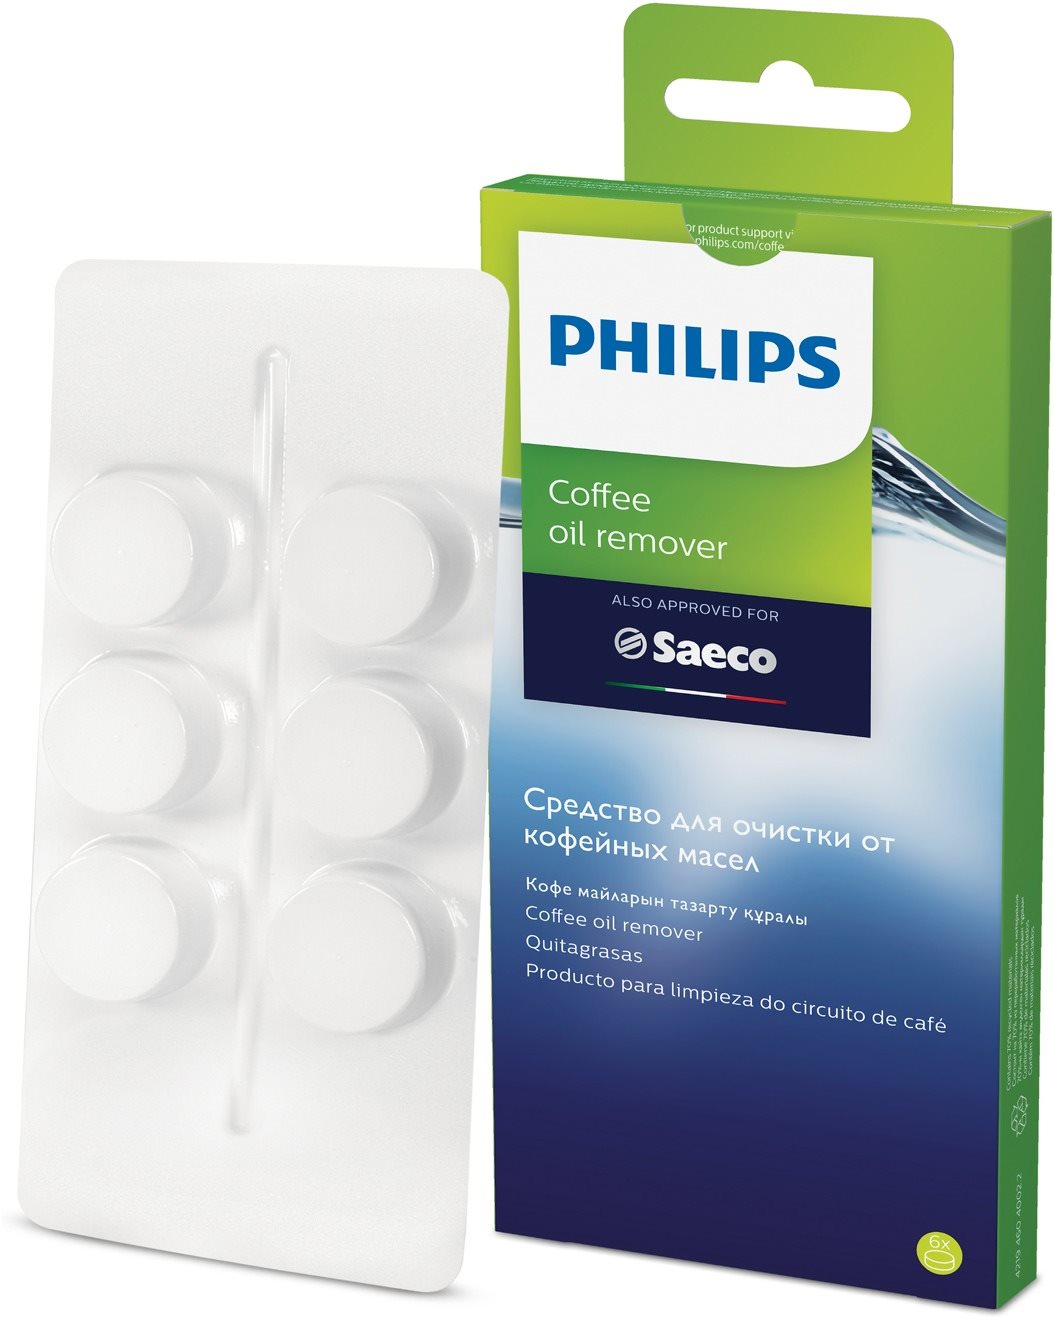 Tisztító tabletta Philips CA6704/10